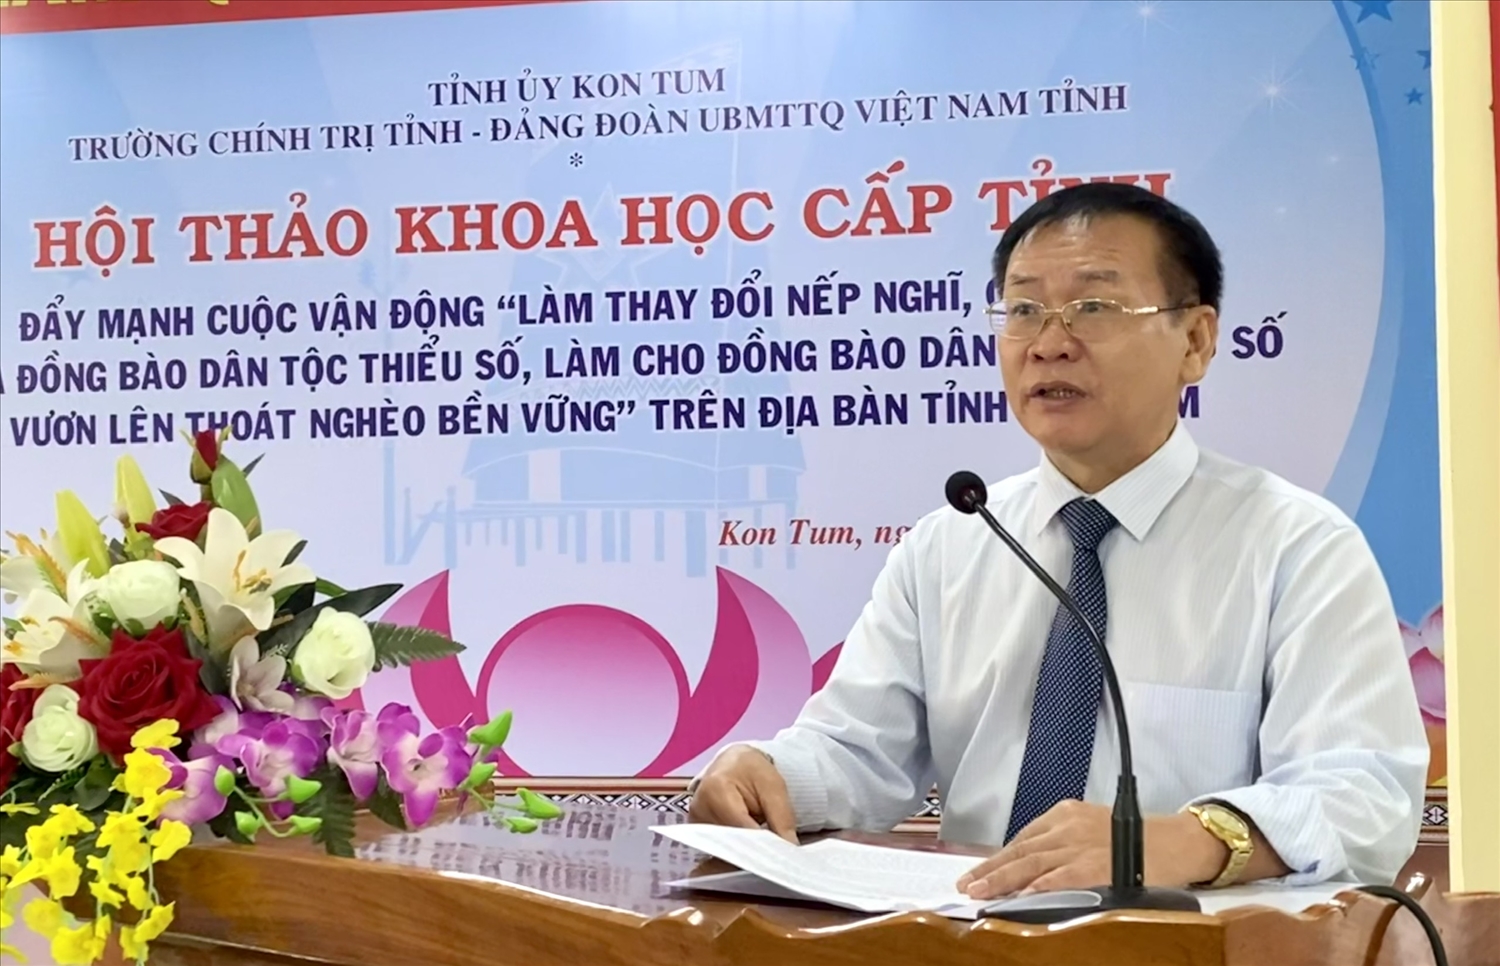 Phó Bí thư Tỉnh ủy Kon Tum Nguyễn Văn Hòa phát biểu khai mạc Hội thảo